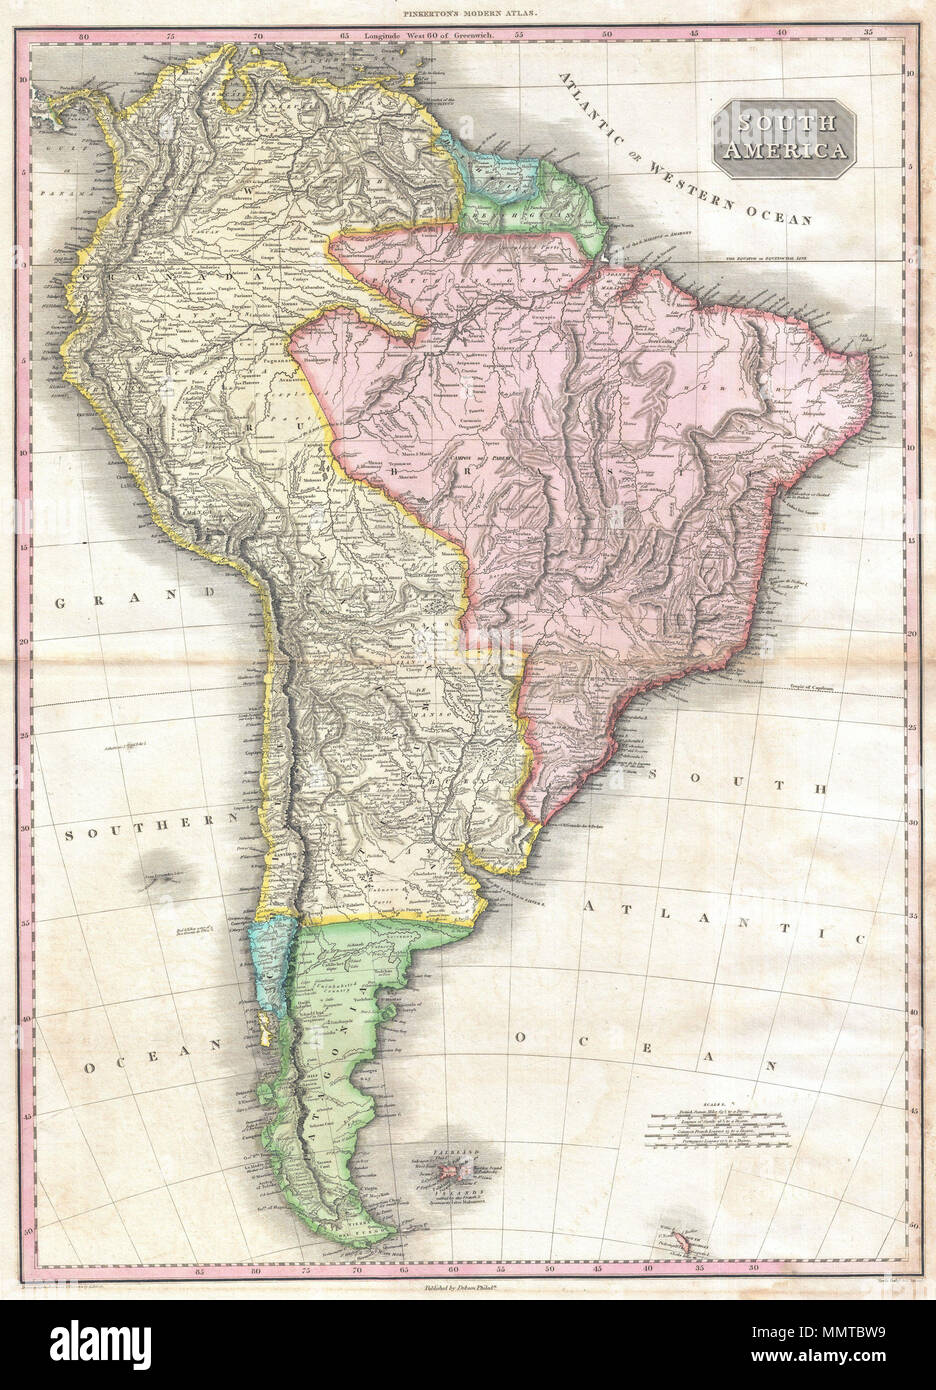 Englisch: Pinkertons außerordentliche 1818 Karte von Südamerika. Deckt den  gesamten Kontinent von Panama bis Feuerland. Umfasst die Falklandinseln  South Gerogia Insel. Pinkerton bietet eine beeindruckende Detail während  der Feststellung indigene Gruppen,